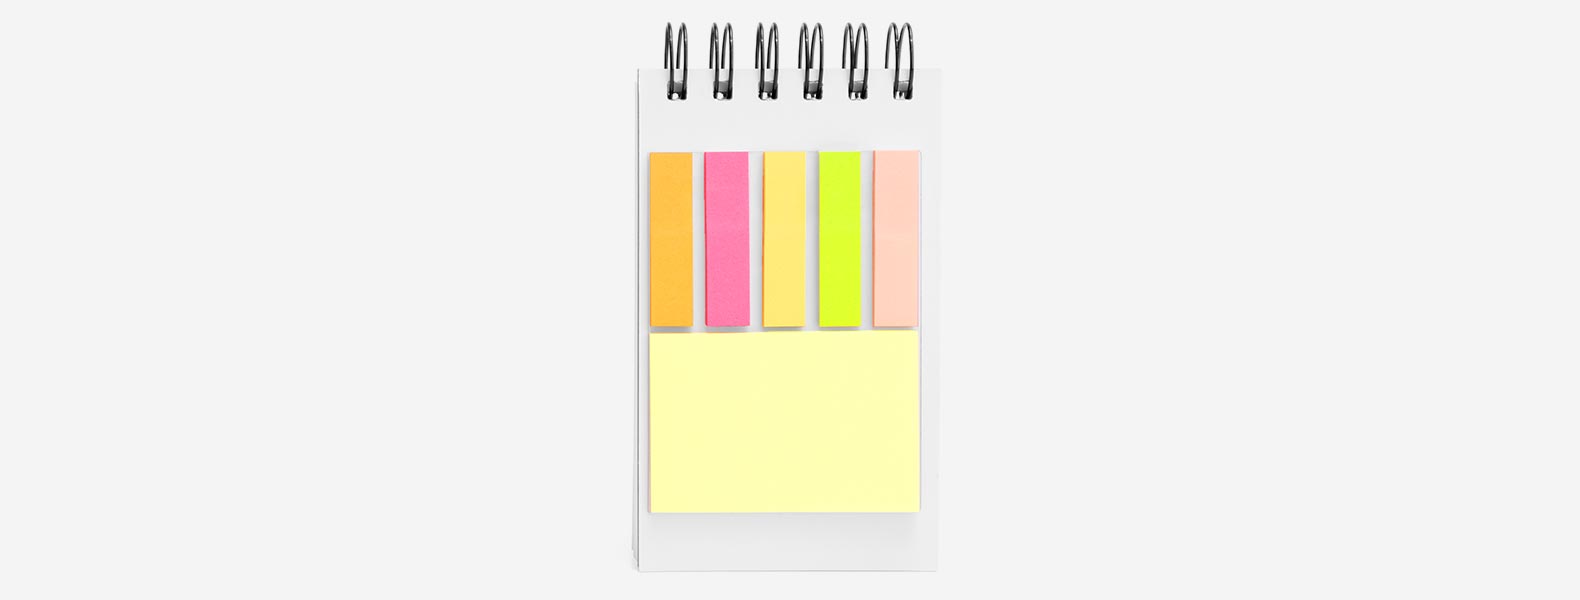 Caderno para anotações verde com capa dura. Conta com 100 folhas pautadas com fechamento wire-o e 5 cores com 25 folhas autocolantes.